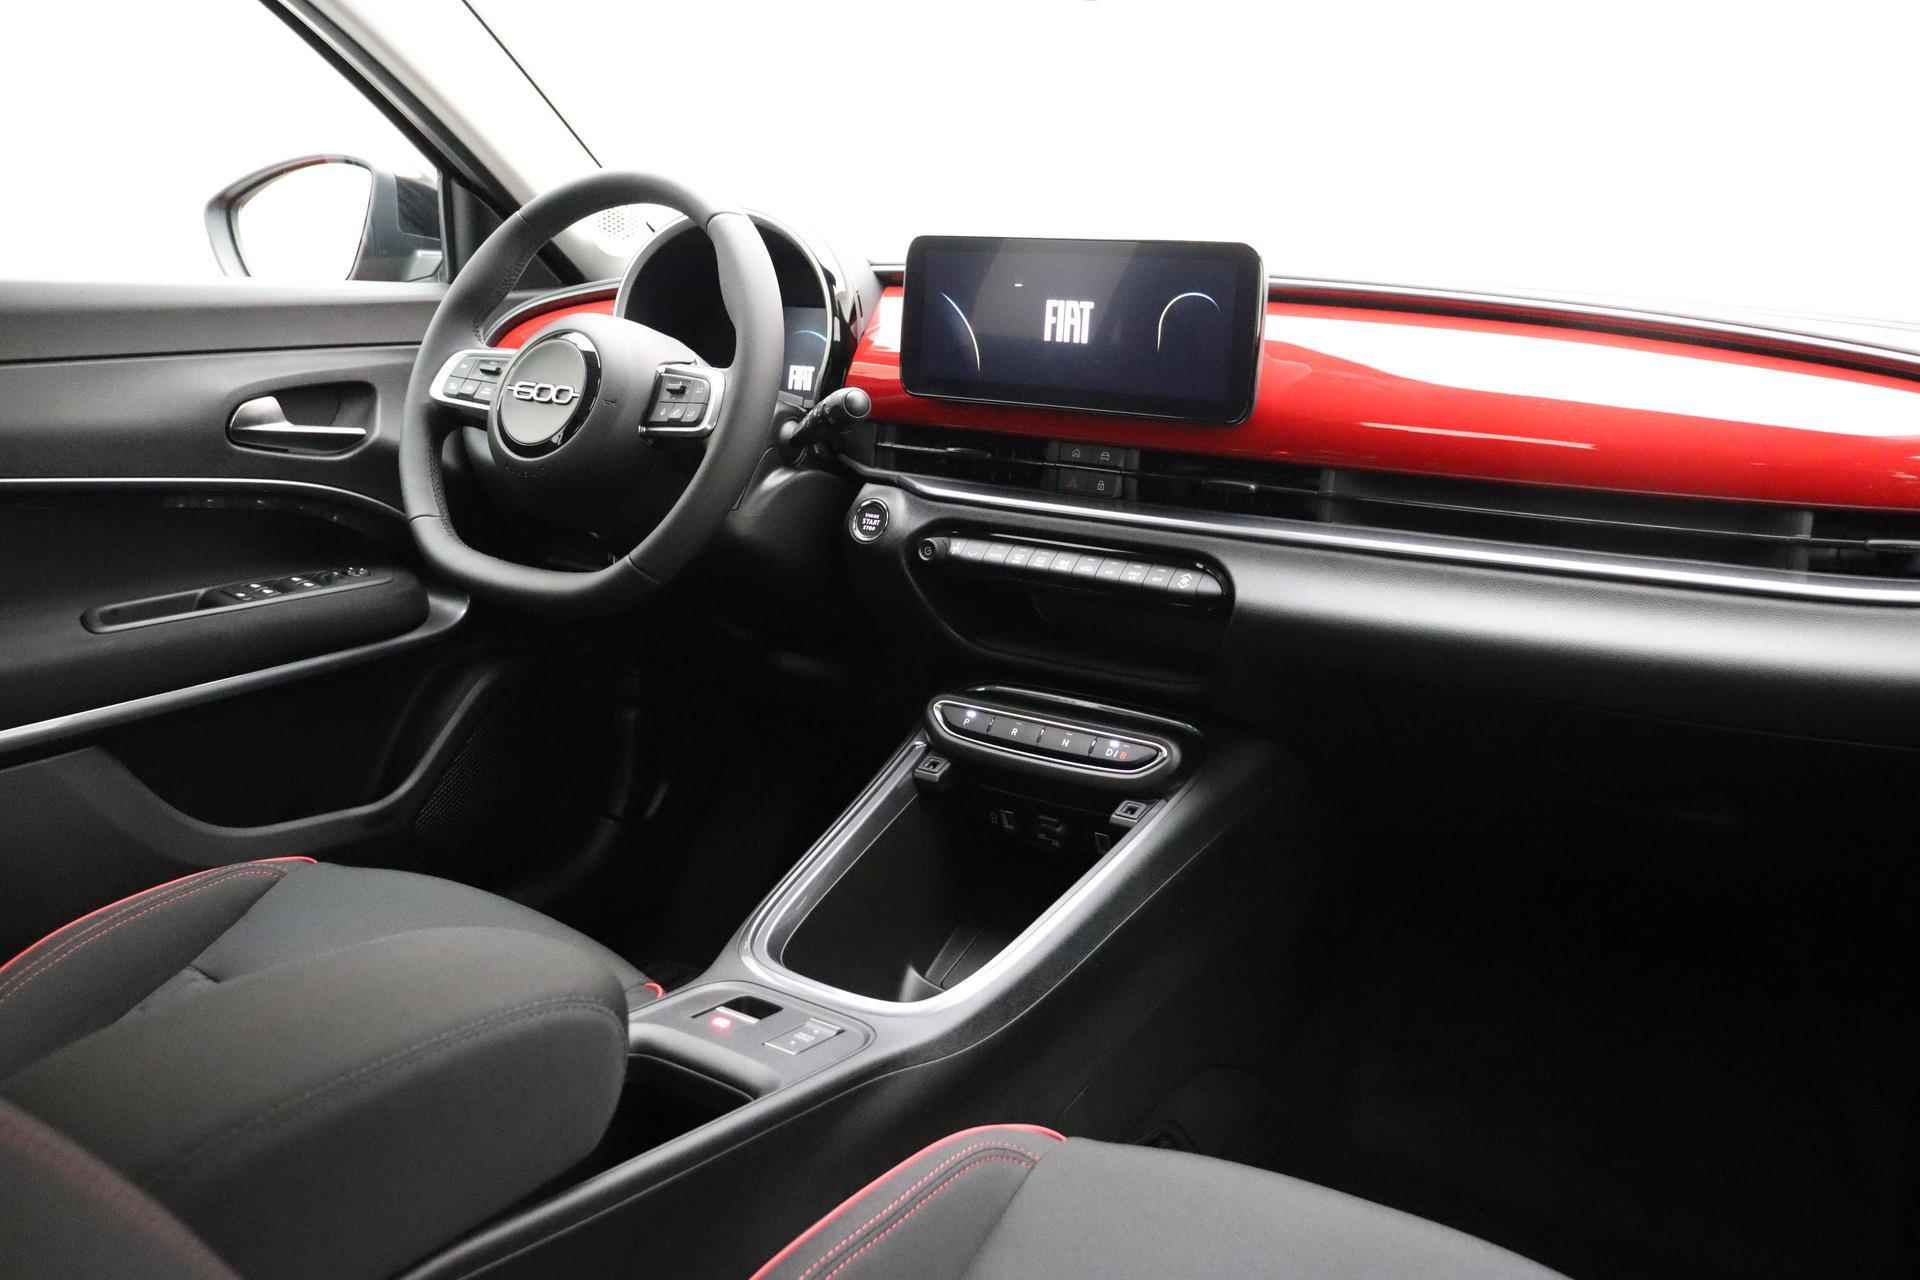 Fiat 600e RED 54 kWh | GRAAG BELLEN VOOR BESCHIKBAARHEID | 409KM ACTIERADIUS (WLTP) | Apple Carplay/Android auto | LED verlichting | Adaptieve cruise control | Lane Assist | - 4/38